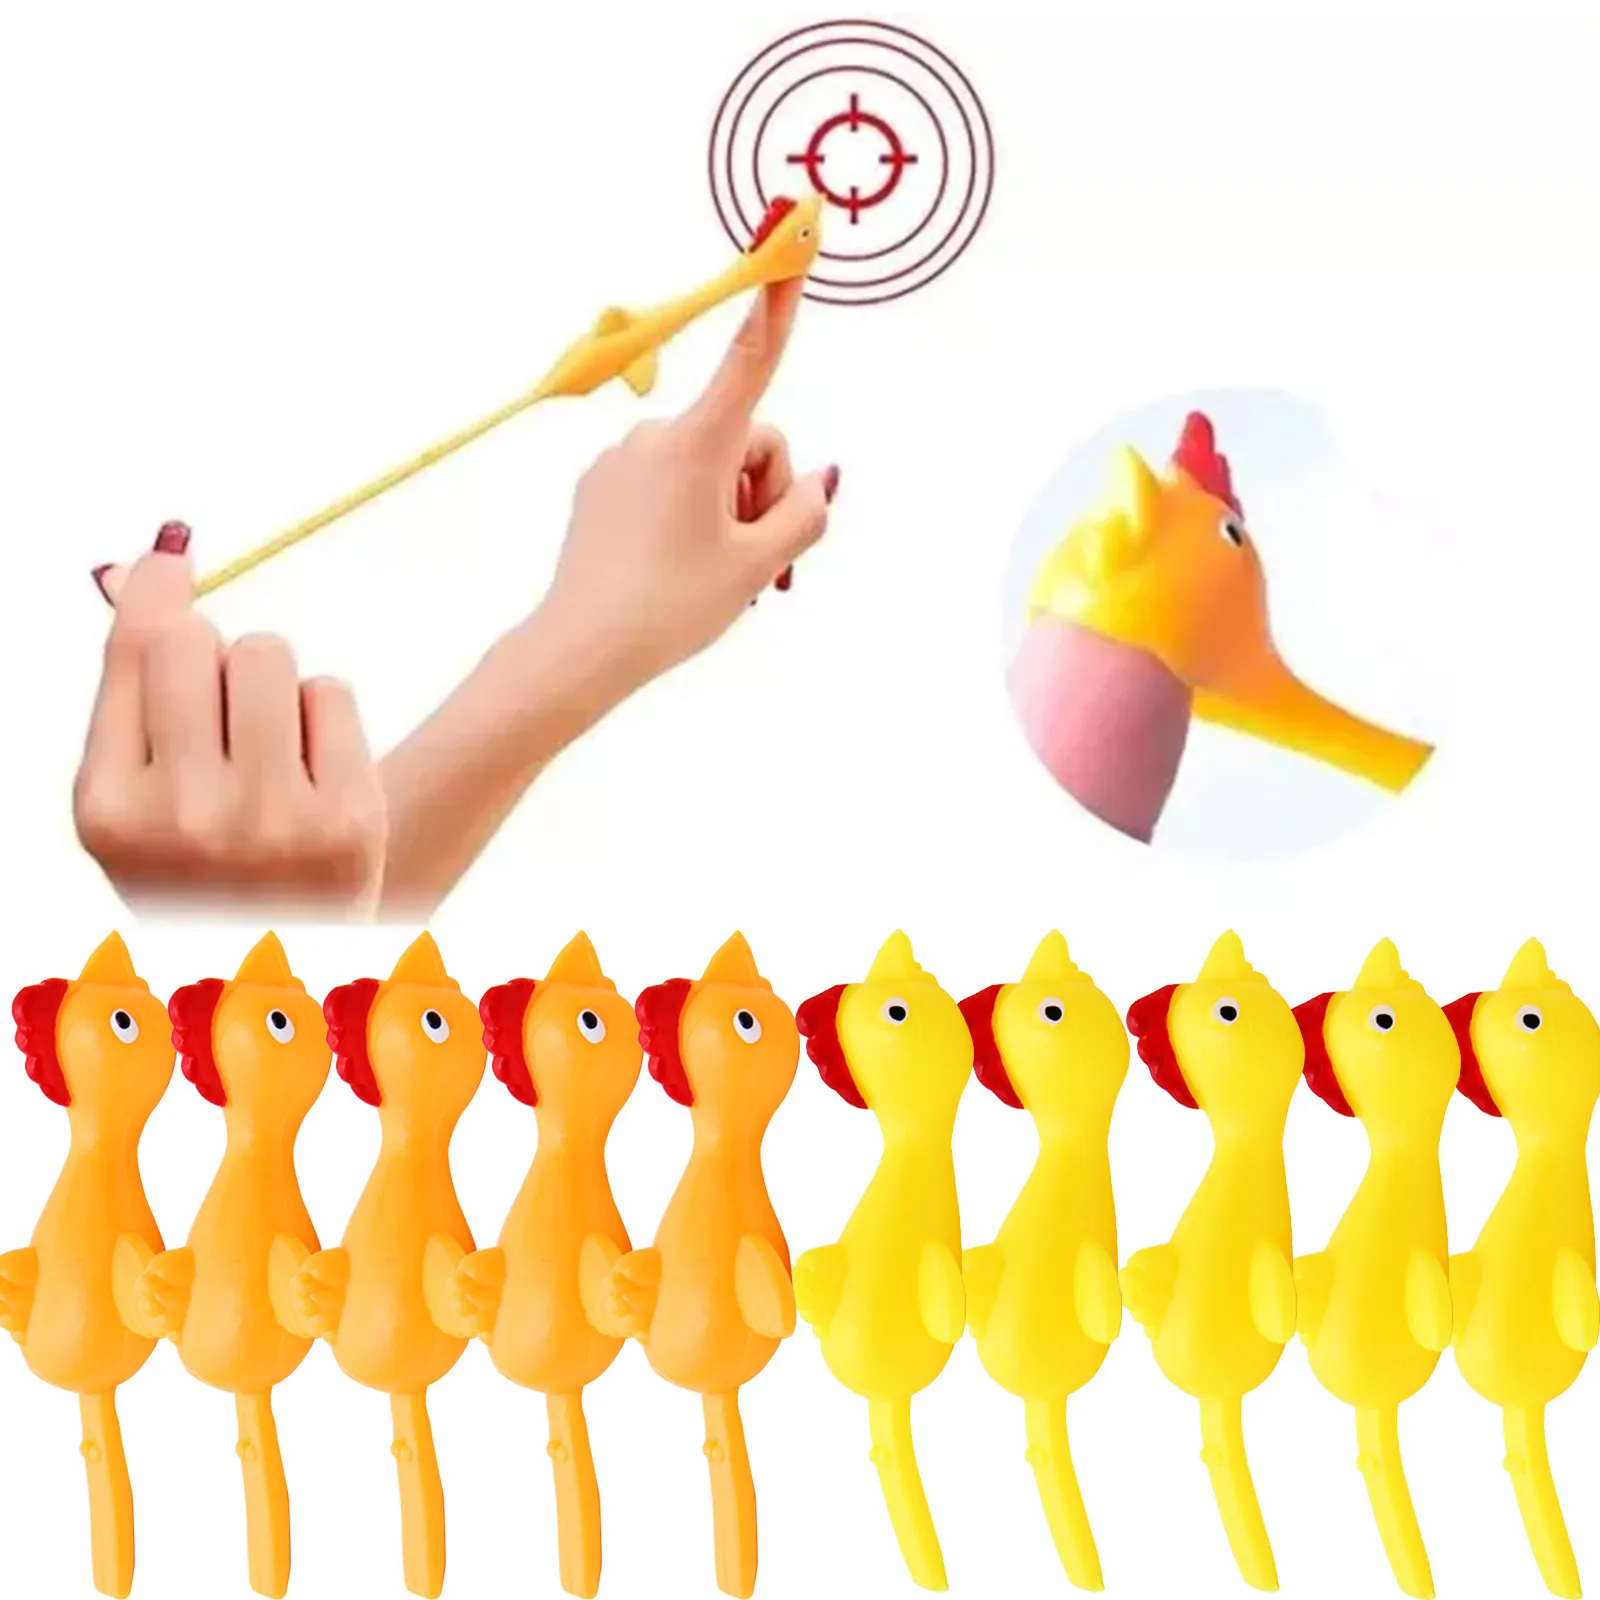 

Креативная катапульта Запуск индейки развлечение и хитрый Рогатка цыпленок тренировка курица эластичный Летающий палец липкие игрушки де...